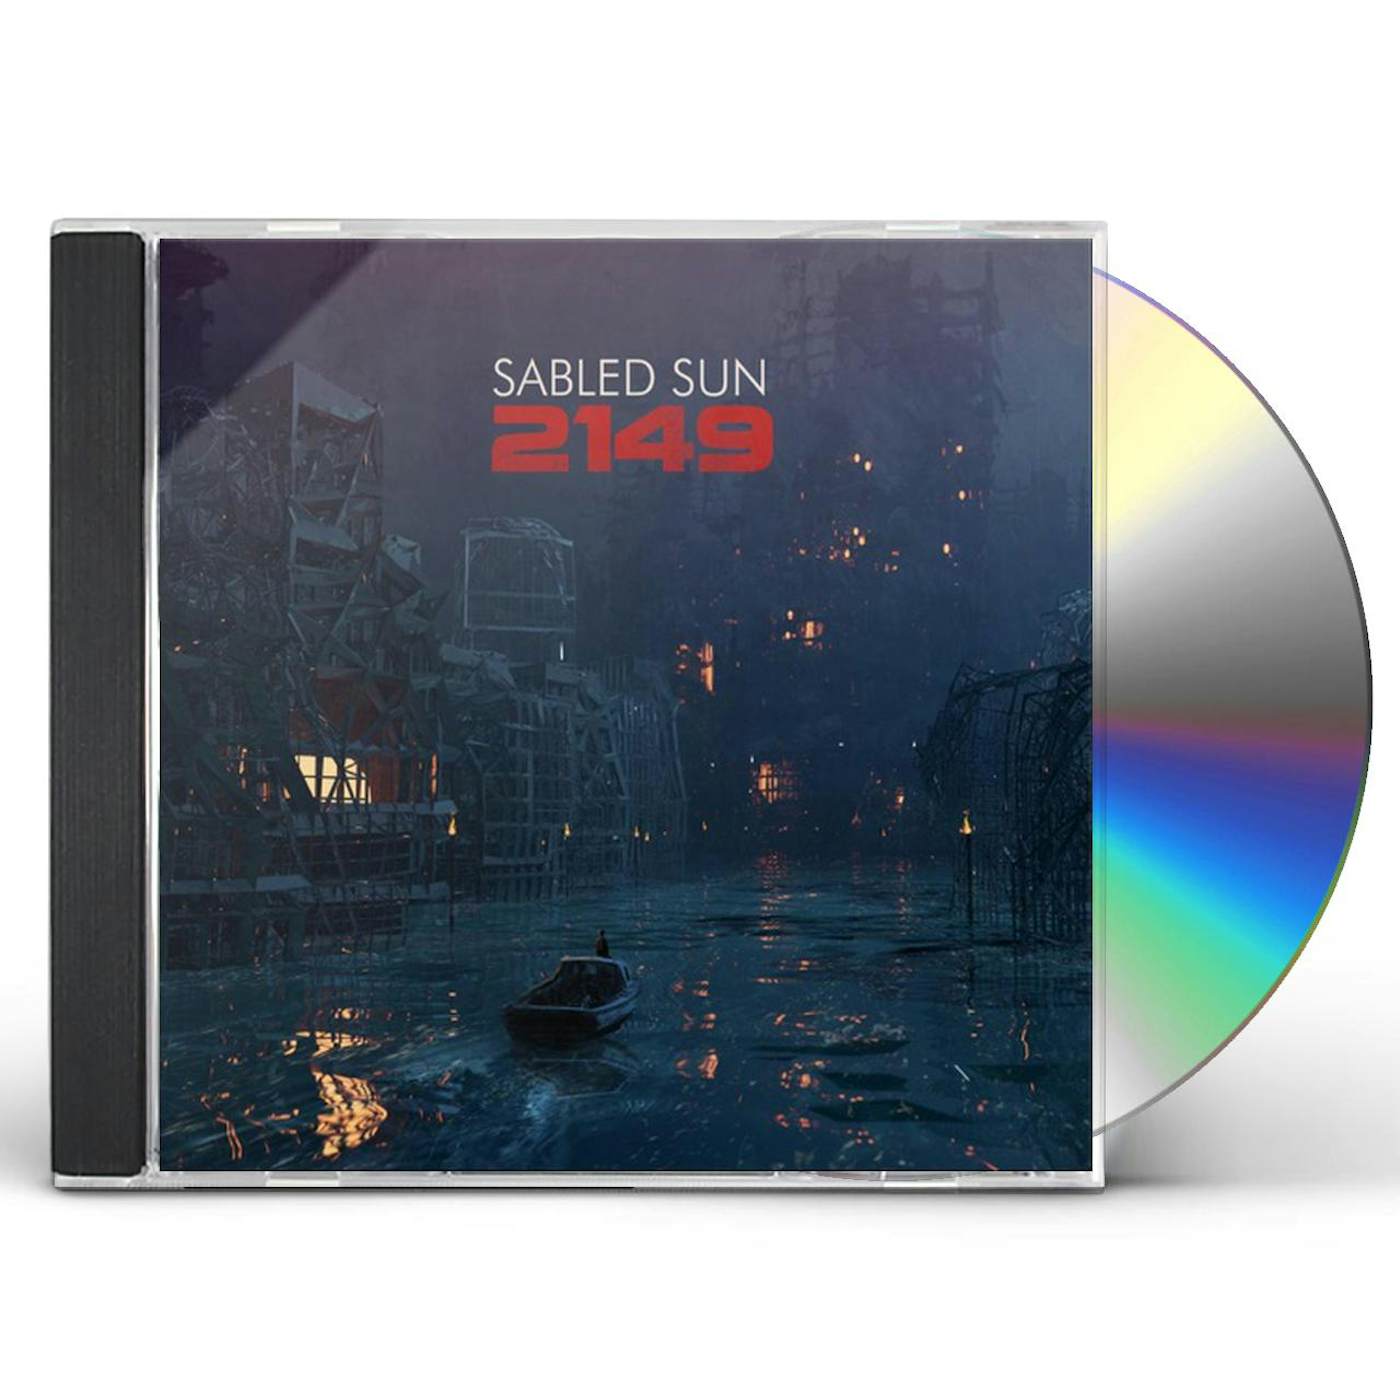 Sabled Sun 2149 CD